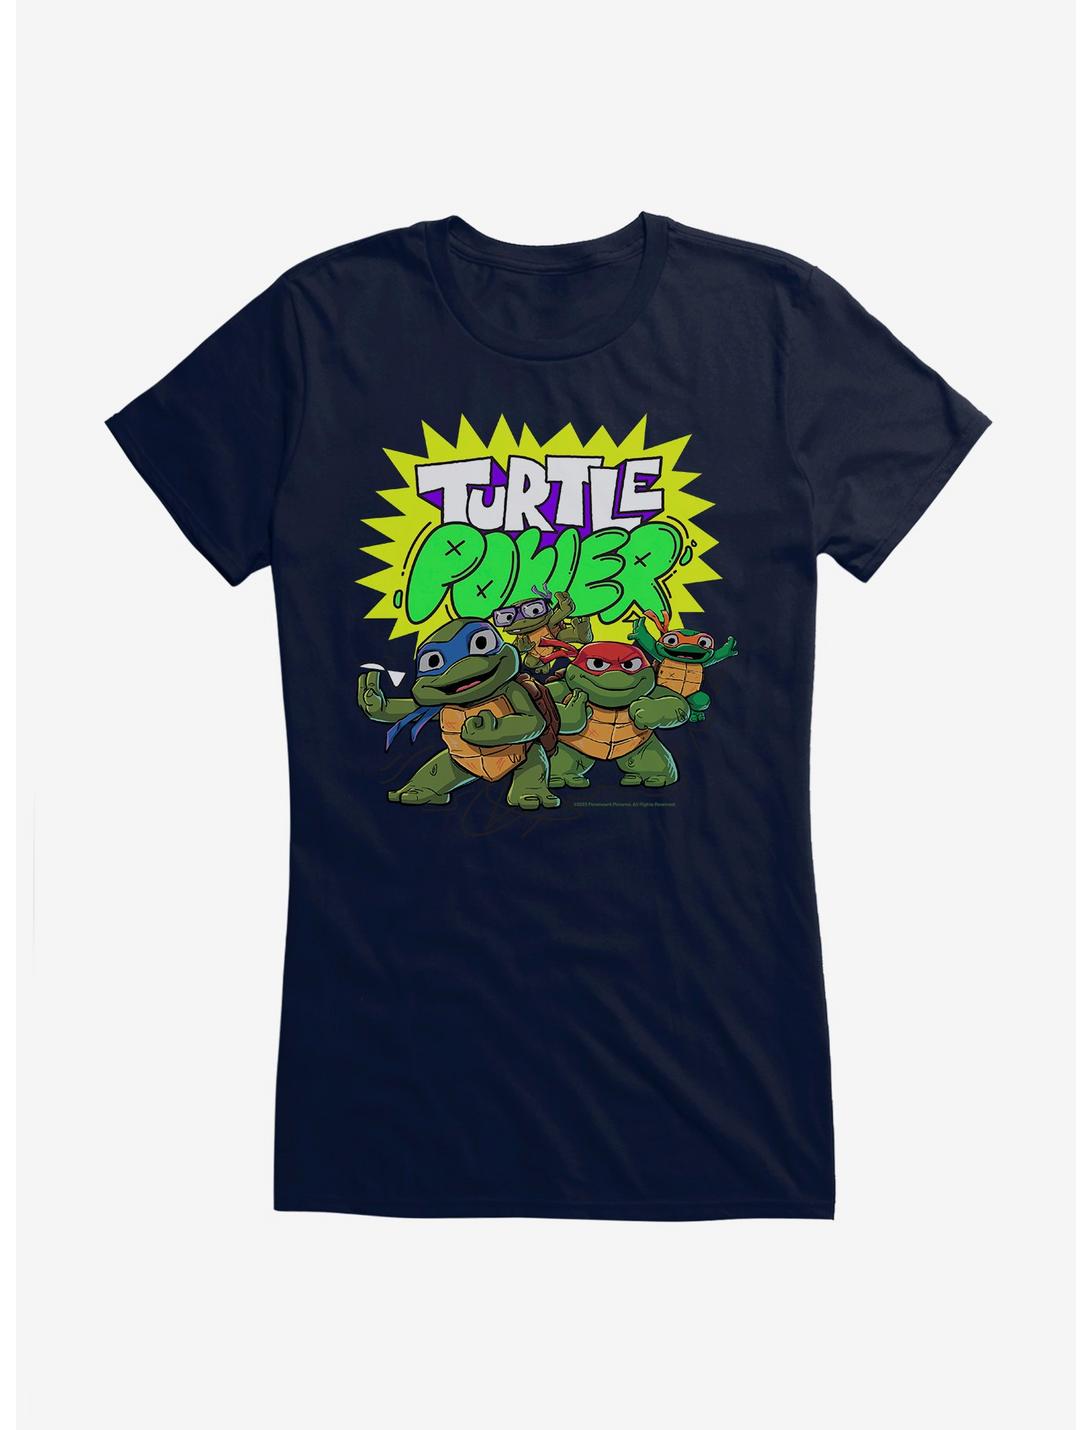 Teenage Mutant Ninja Turtles: Mutant Mayhem Turtle Power Girls T